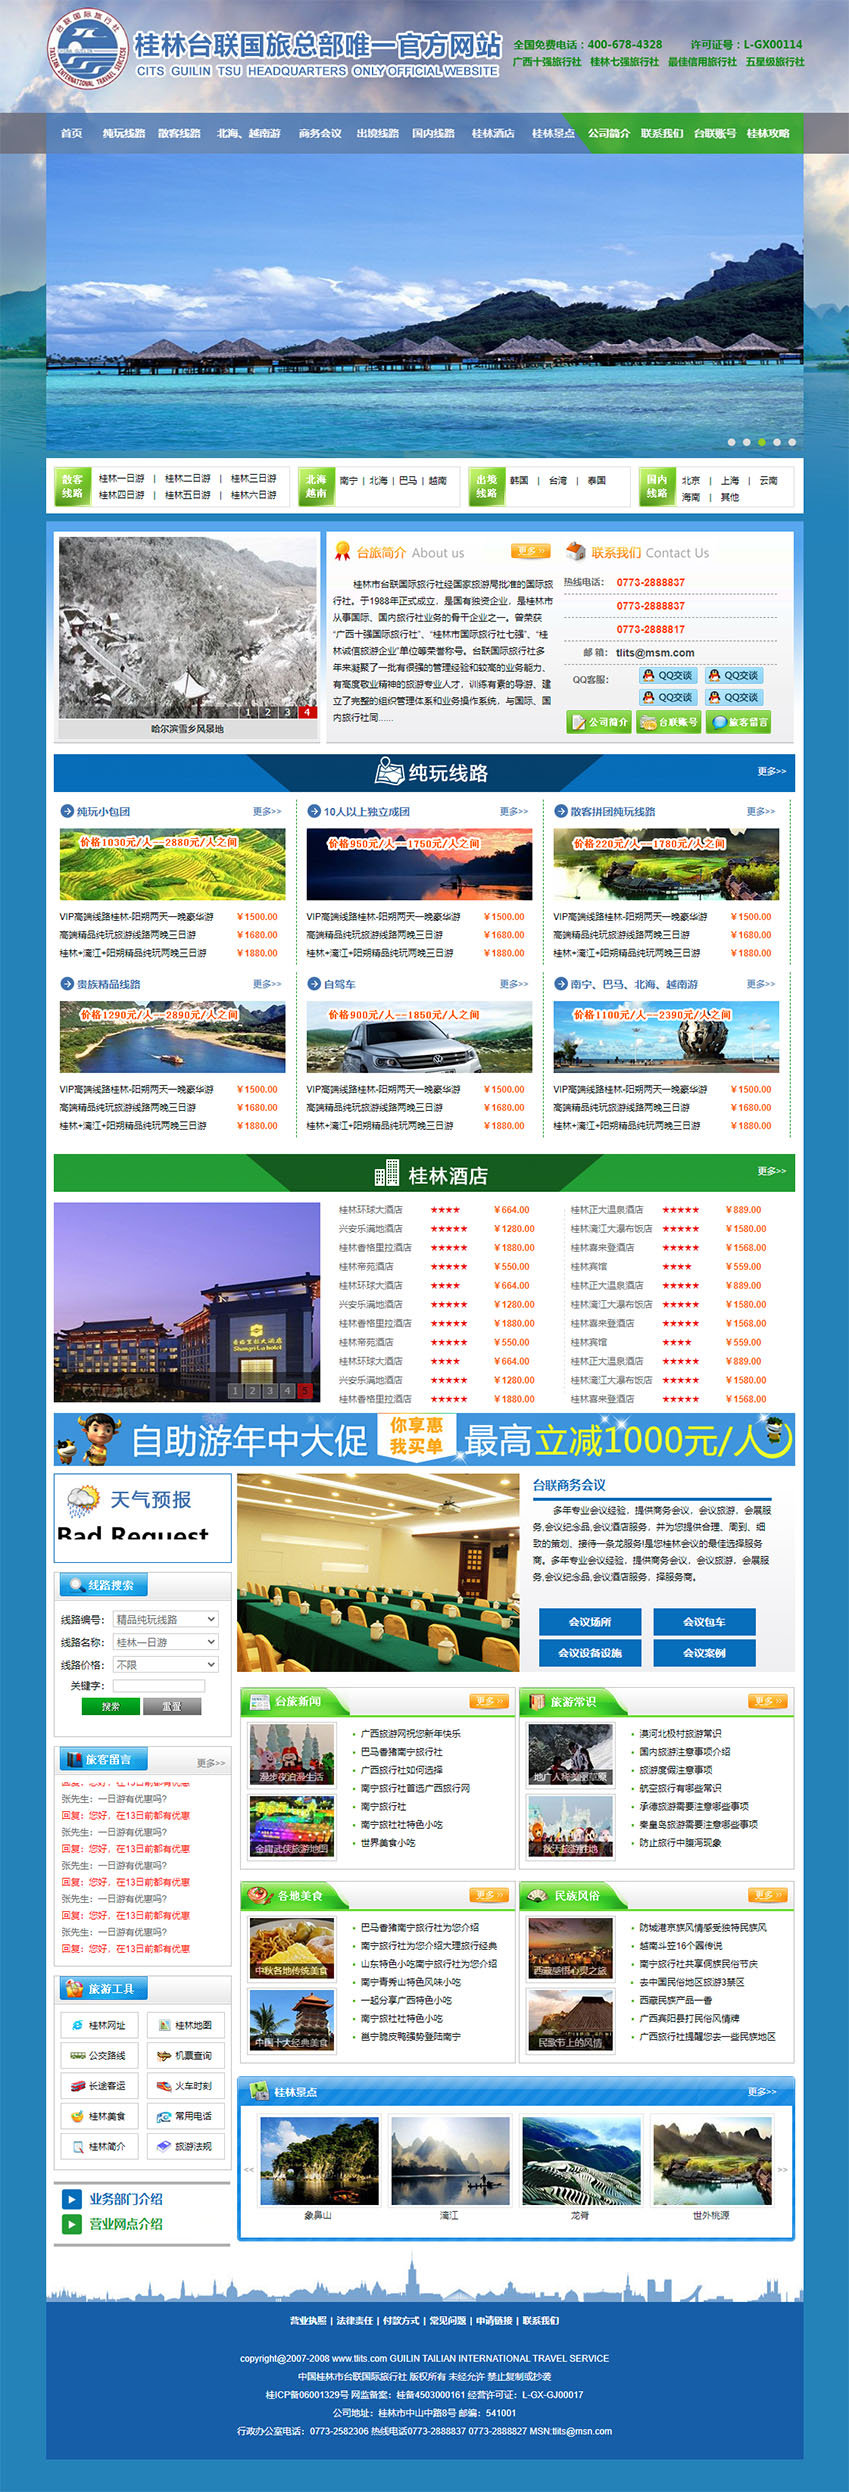 免费旅游公司企业门户网站html模板